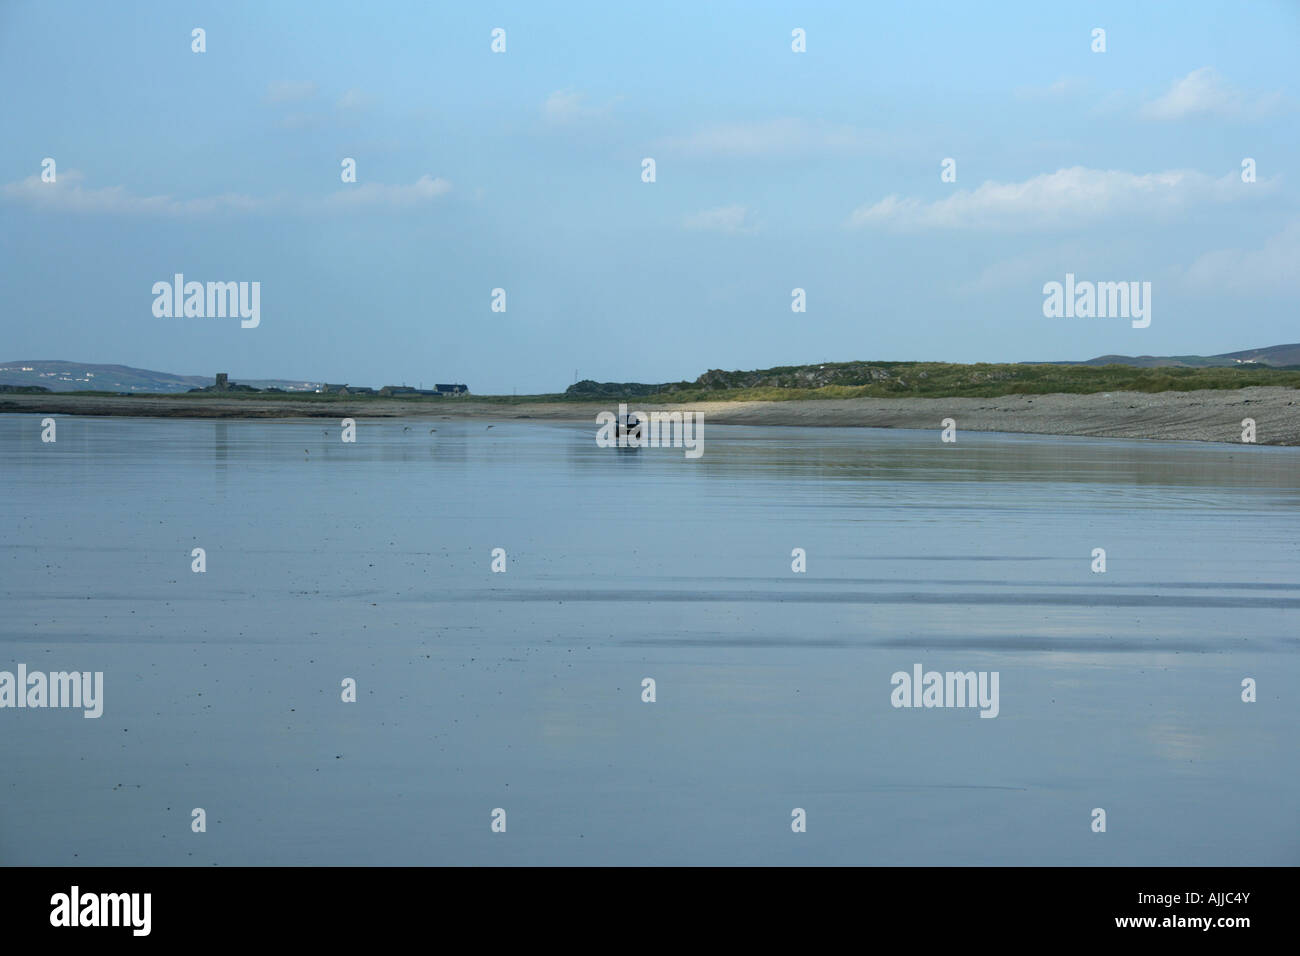 4x4 tout-terrain, Pollan beach, île de doagh, Donegal, Irlande Banque D'Images